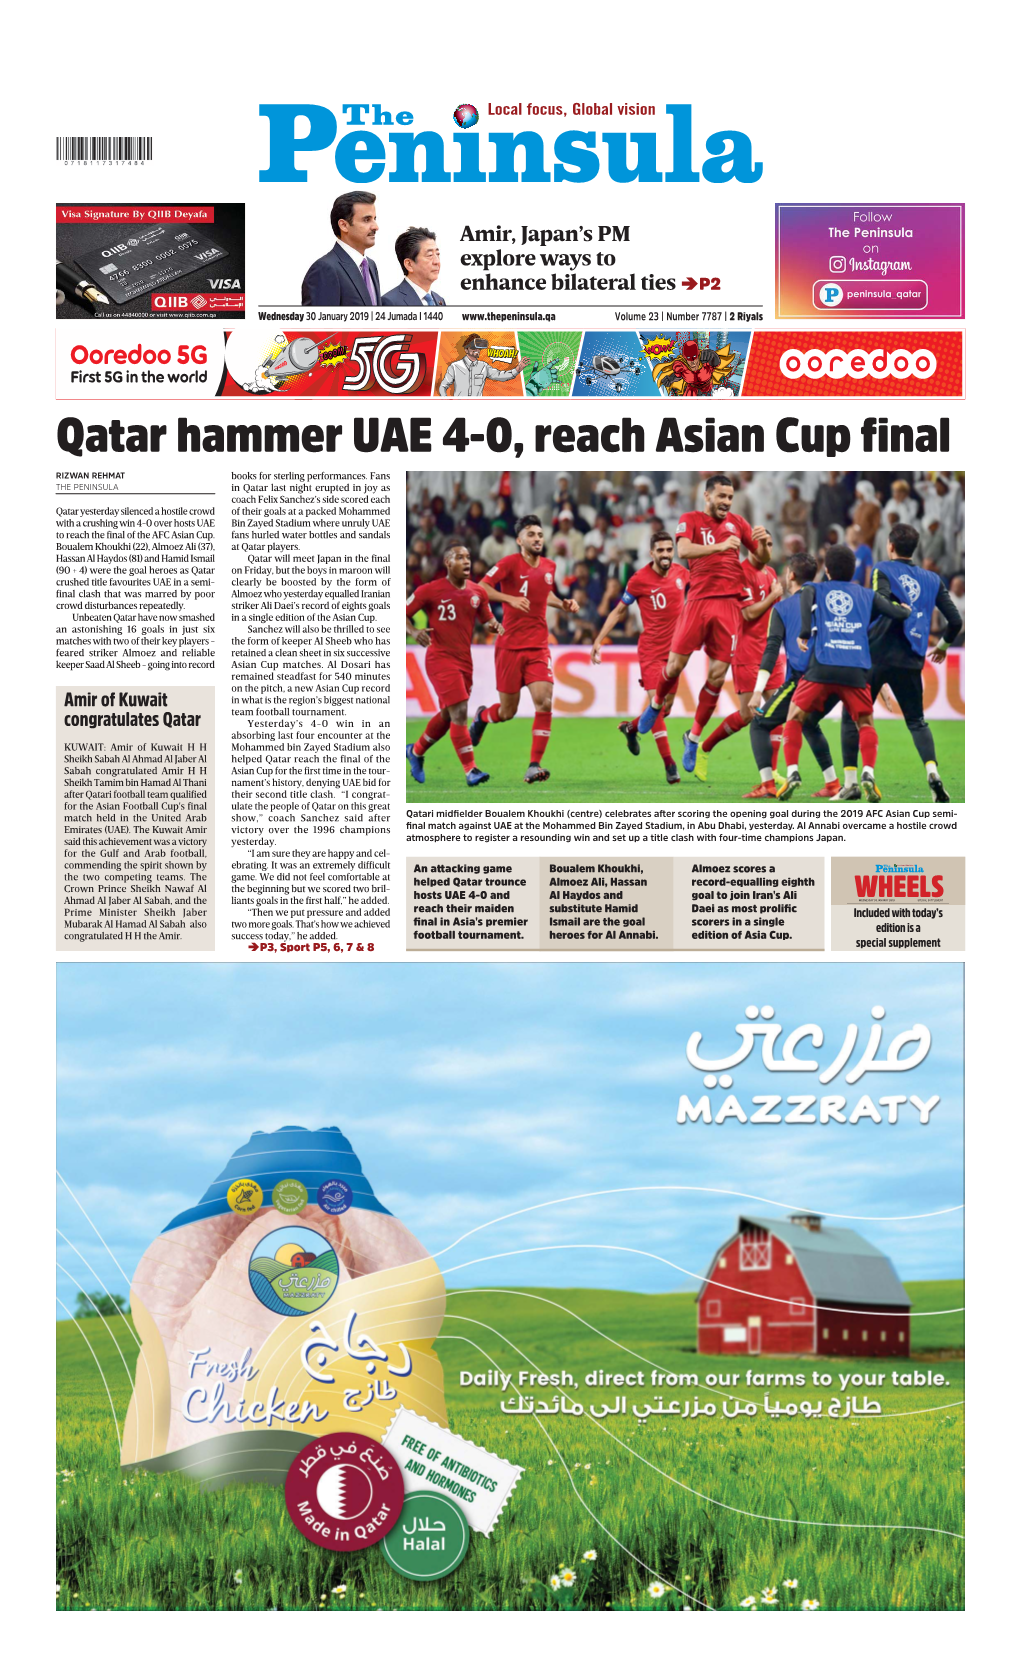 Qatar Hammer UAE 4-0, Reach Asian Cup Final